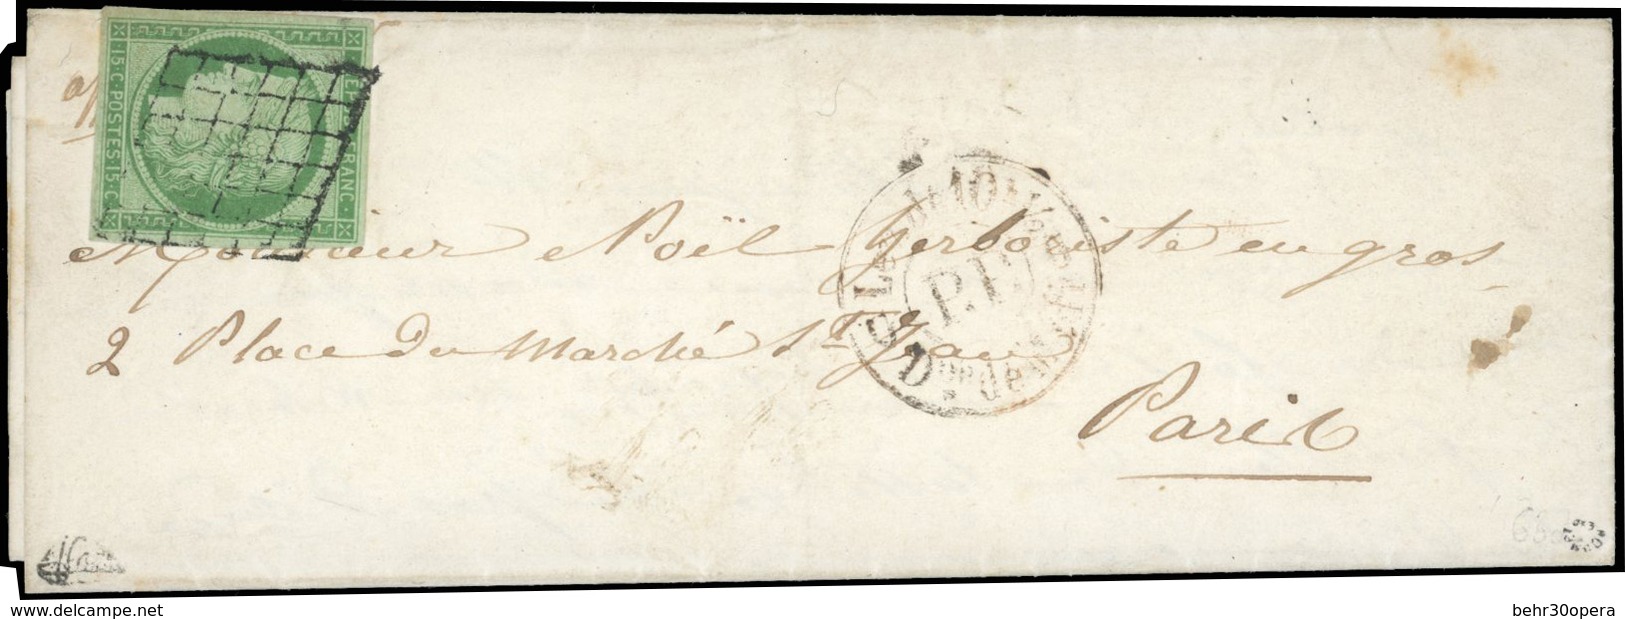 O 15c. Vert Obl. Grille S/lettre Manuscrite Du 21 Août 1850 Frappée Du CàD Rouge ''P.P'' De 1850 à Destination De PARIS. - 1849-1850 Cérès